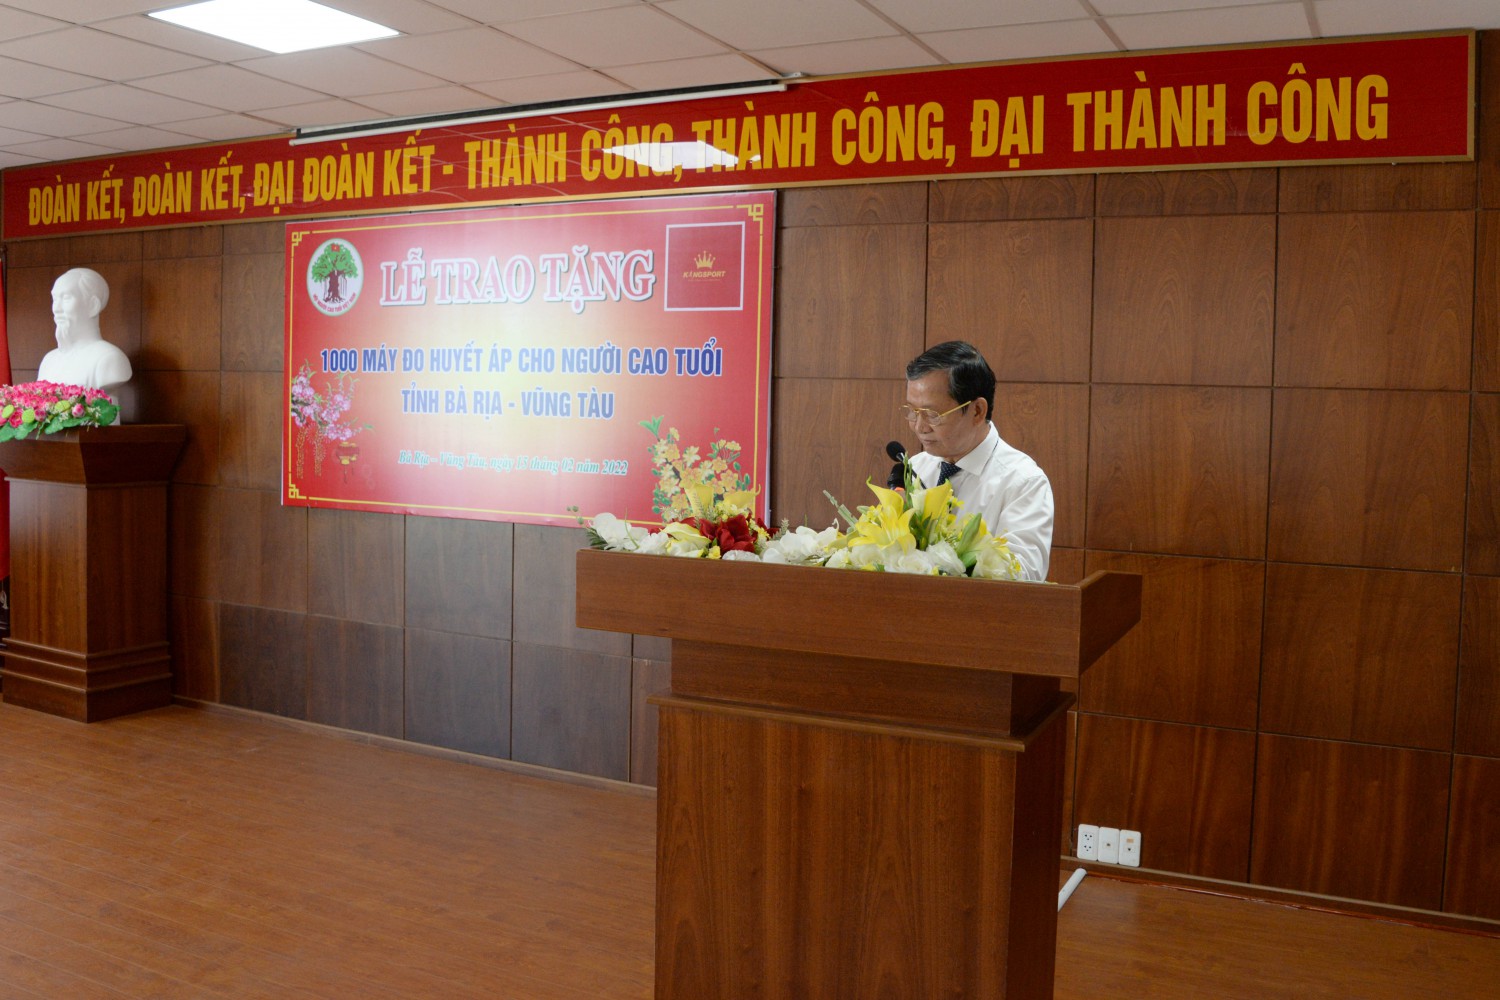 Ông Lương Trí Tiên – Trưởng Ban đại diện Hội Người cao tuổi tỉnh Bà Rịa – Vũng Tàu phát biểu